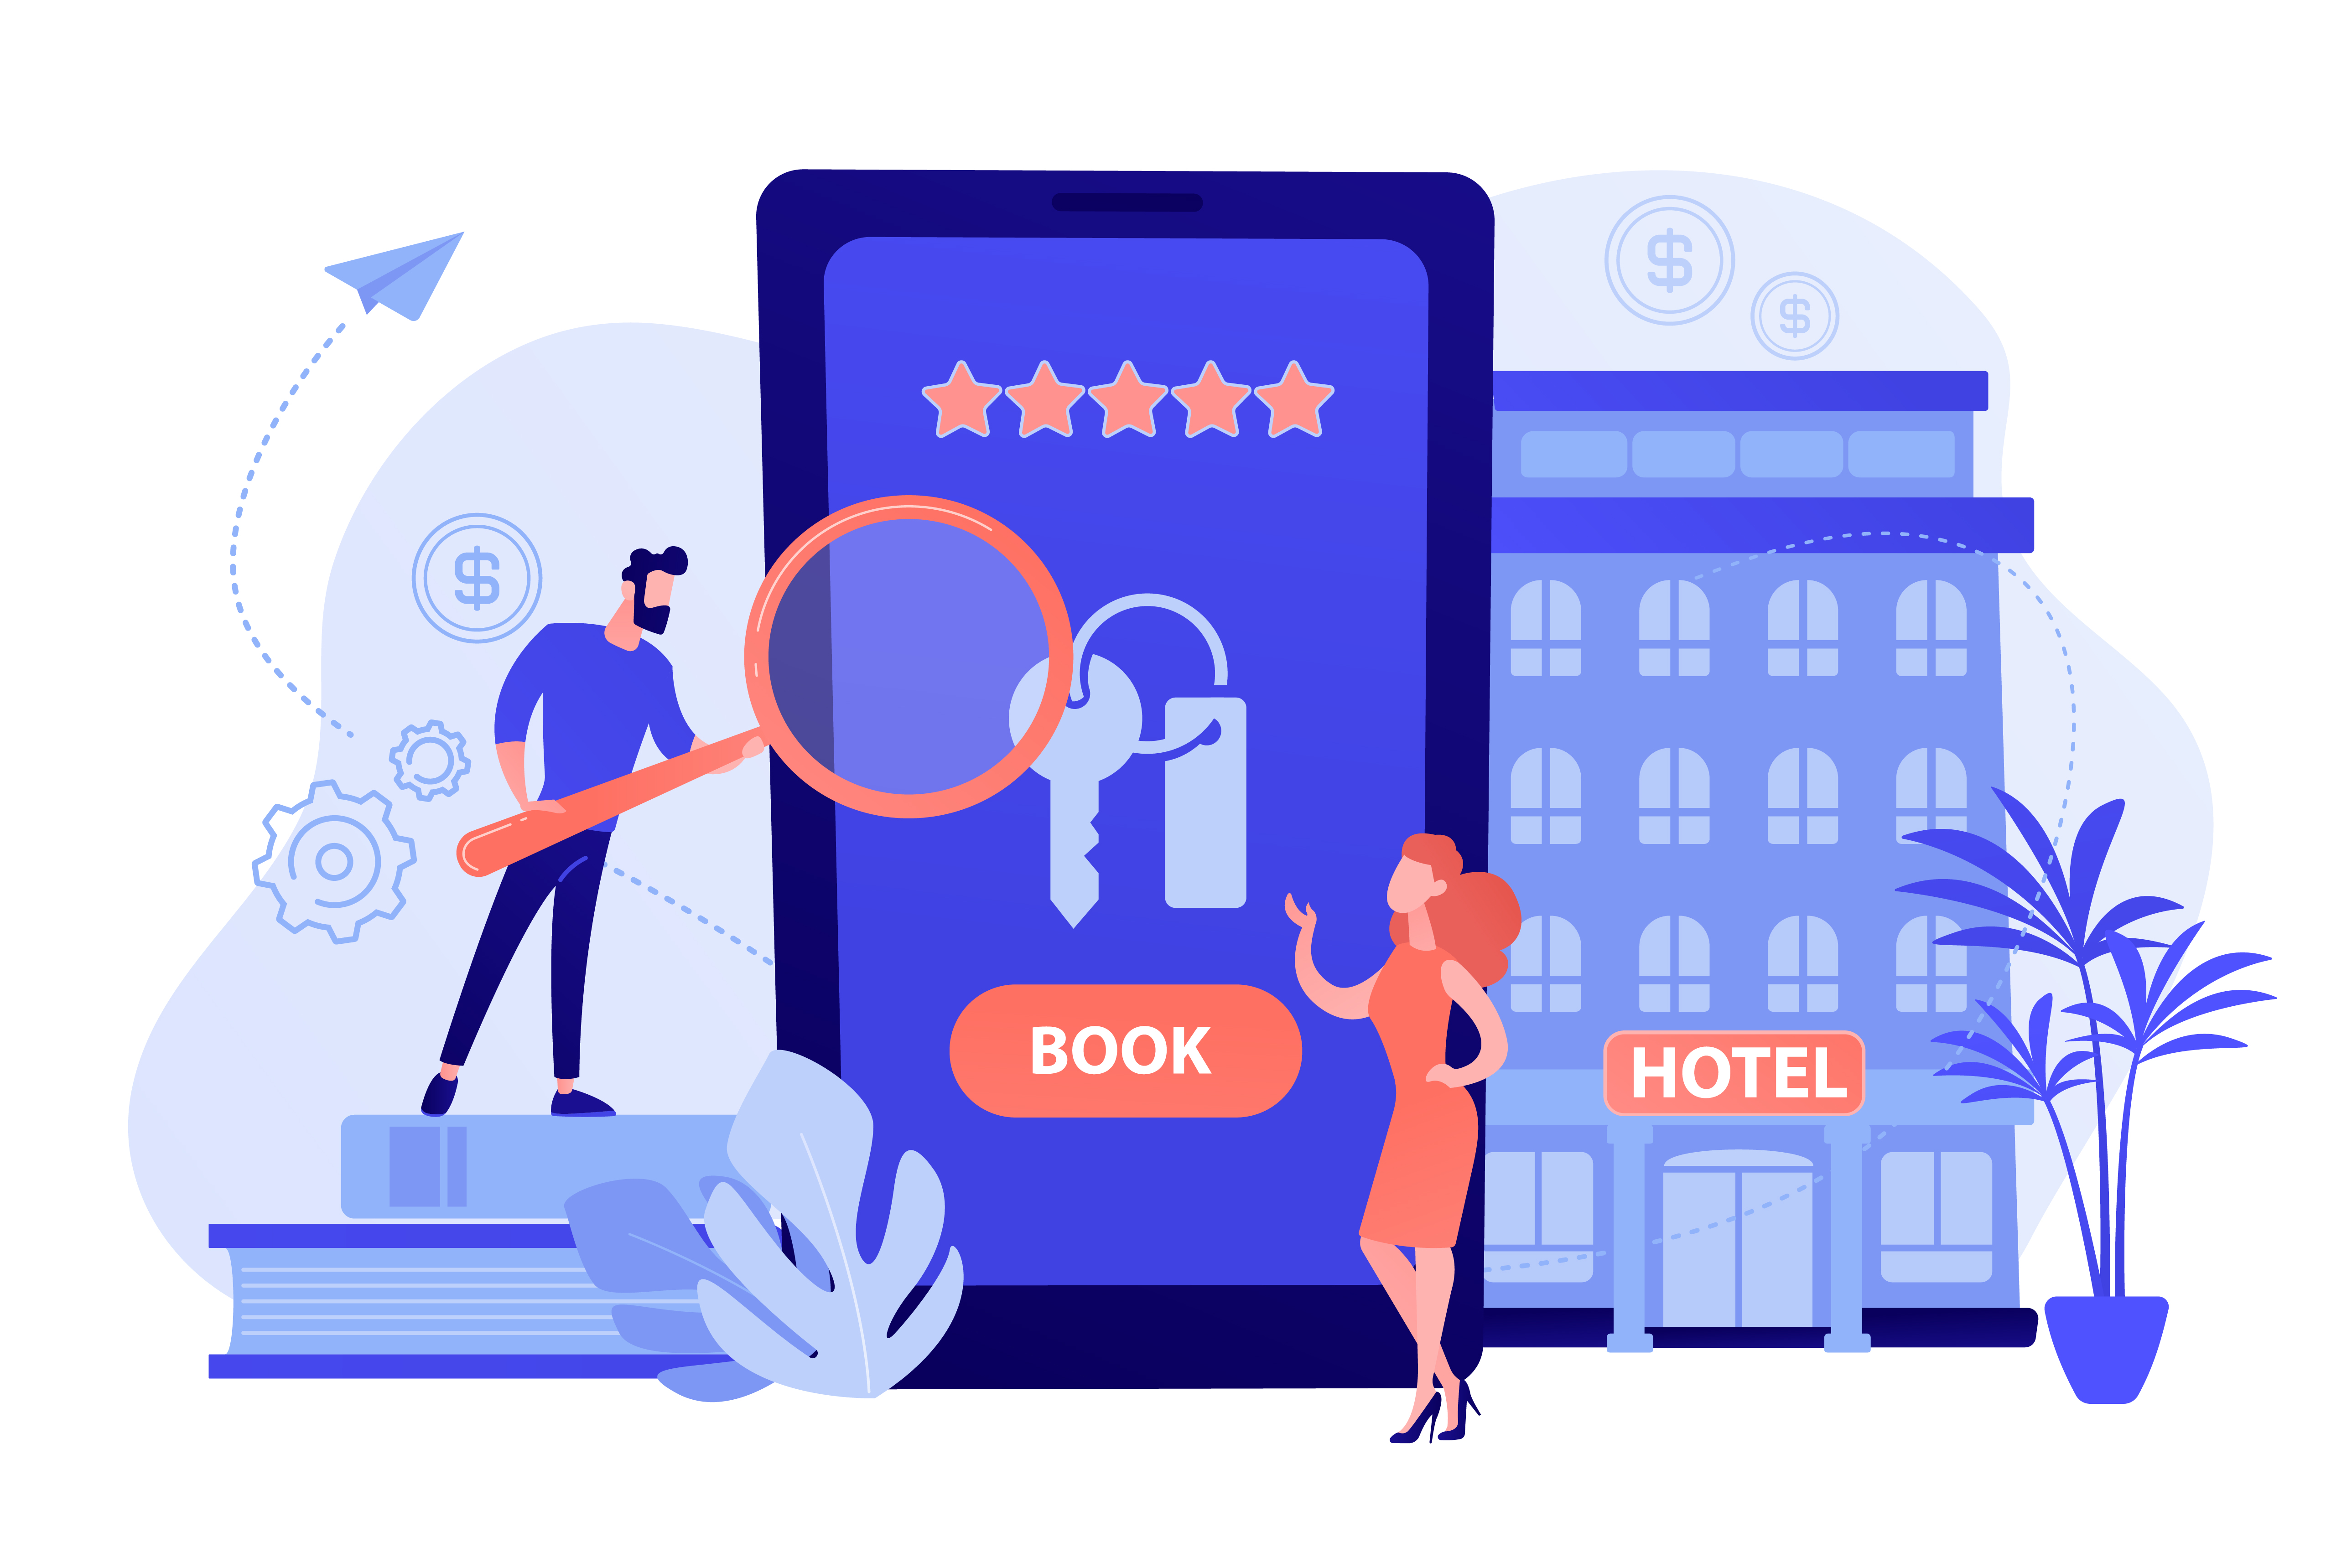 Ilustração de um celular centralizado na tela com duas pessoas explorando um aplicativo. Ao fundo, um hotel.